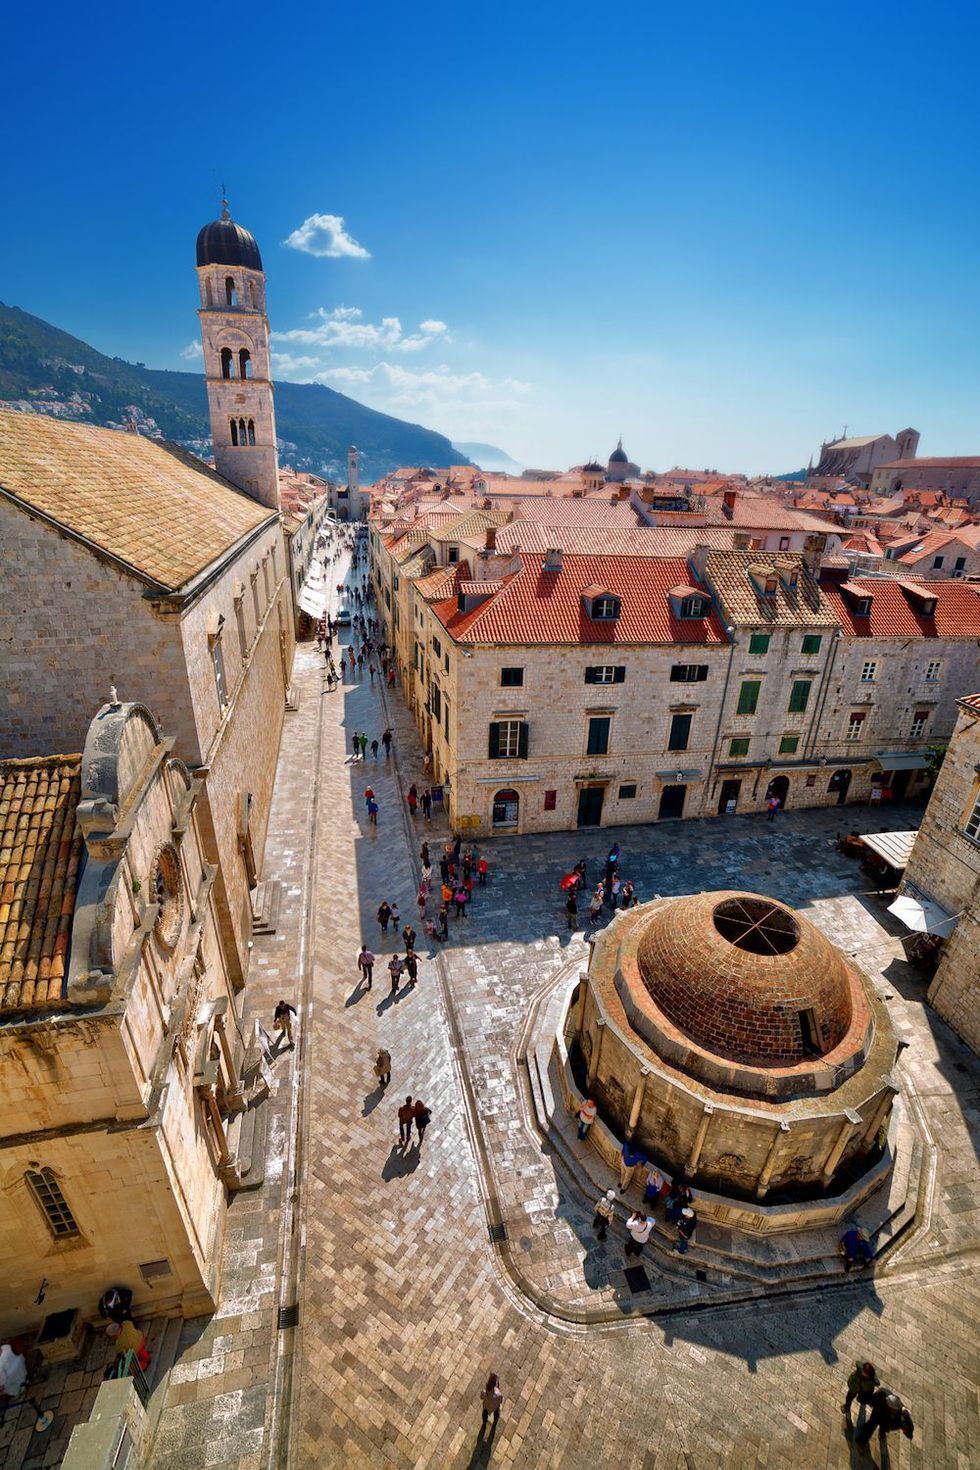 Het oude stadscentrum van Dubrovnik van bovenaf